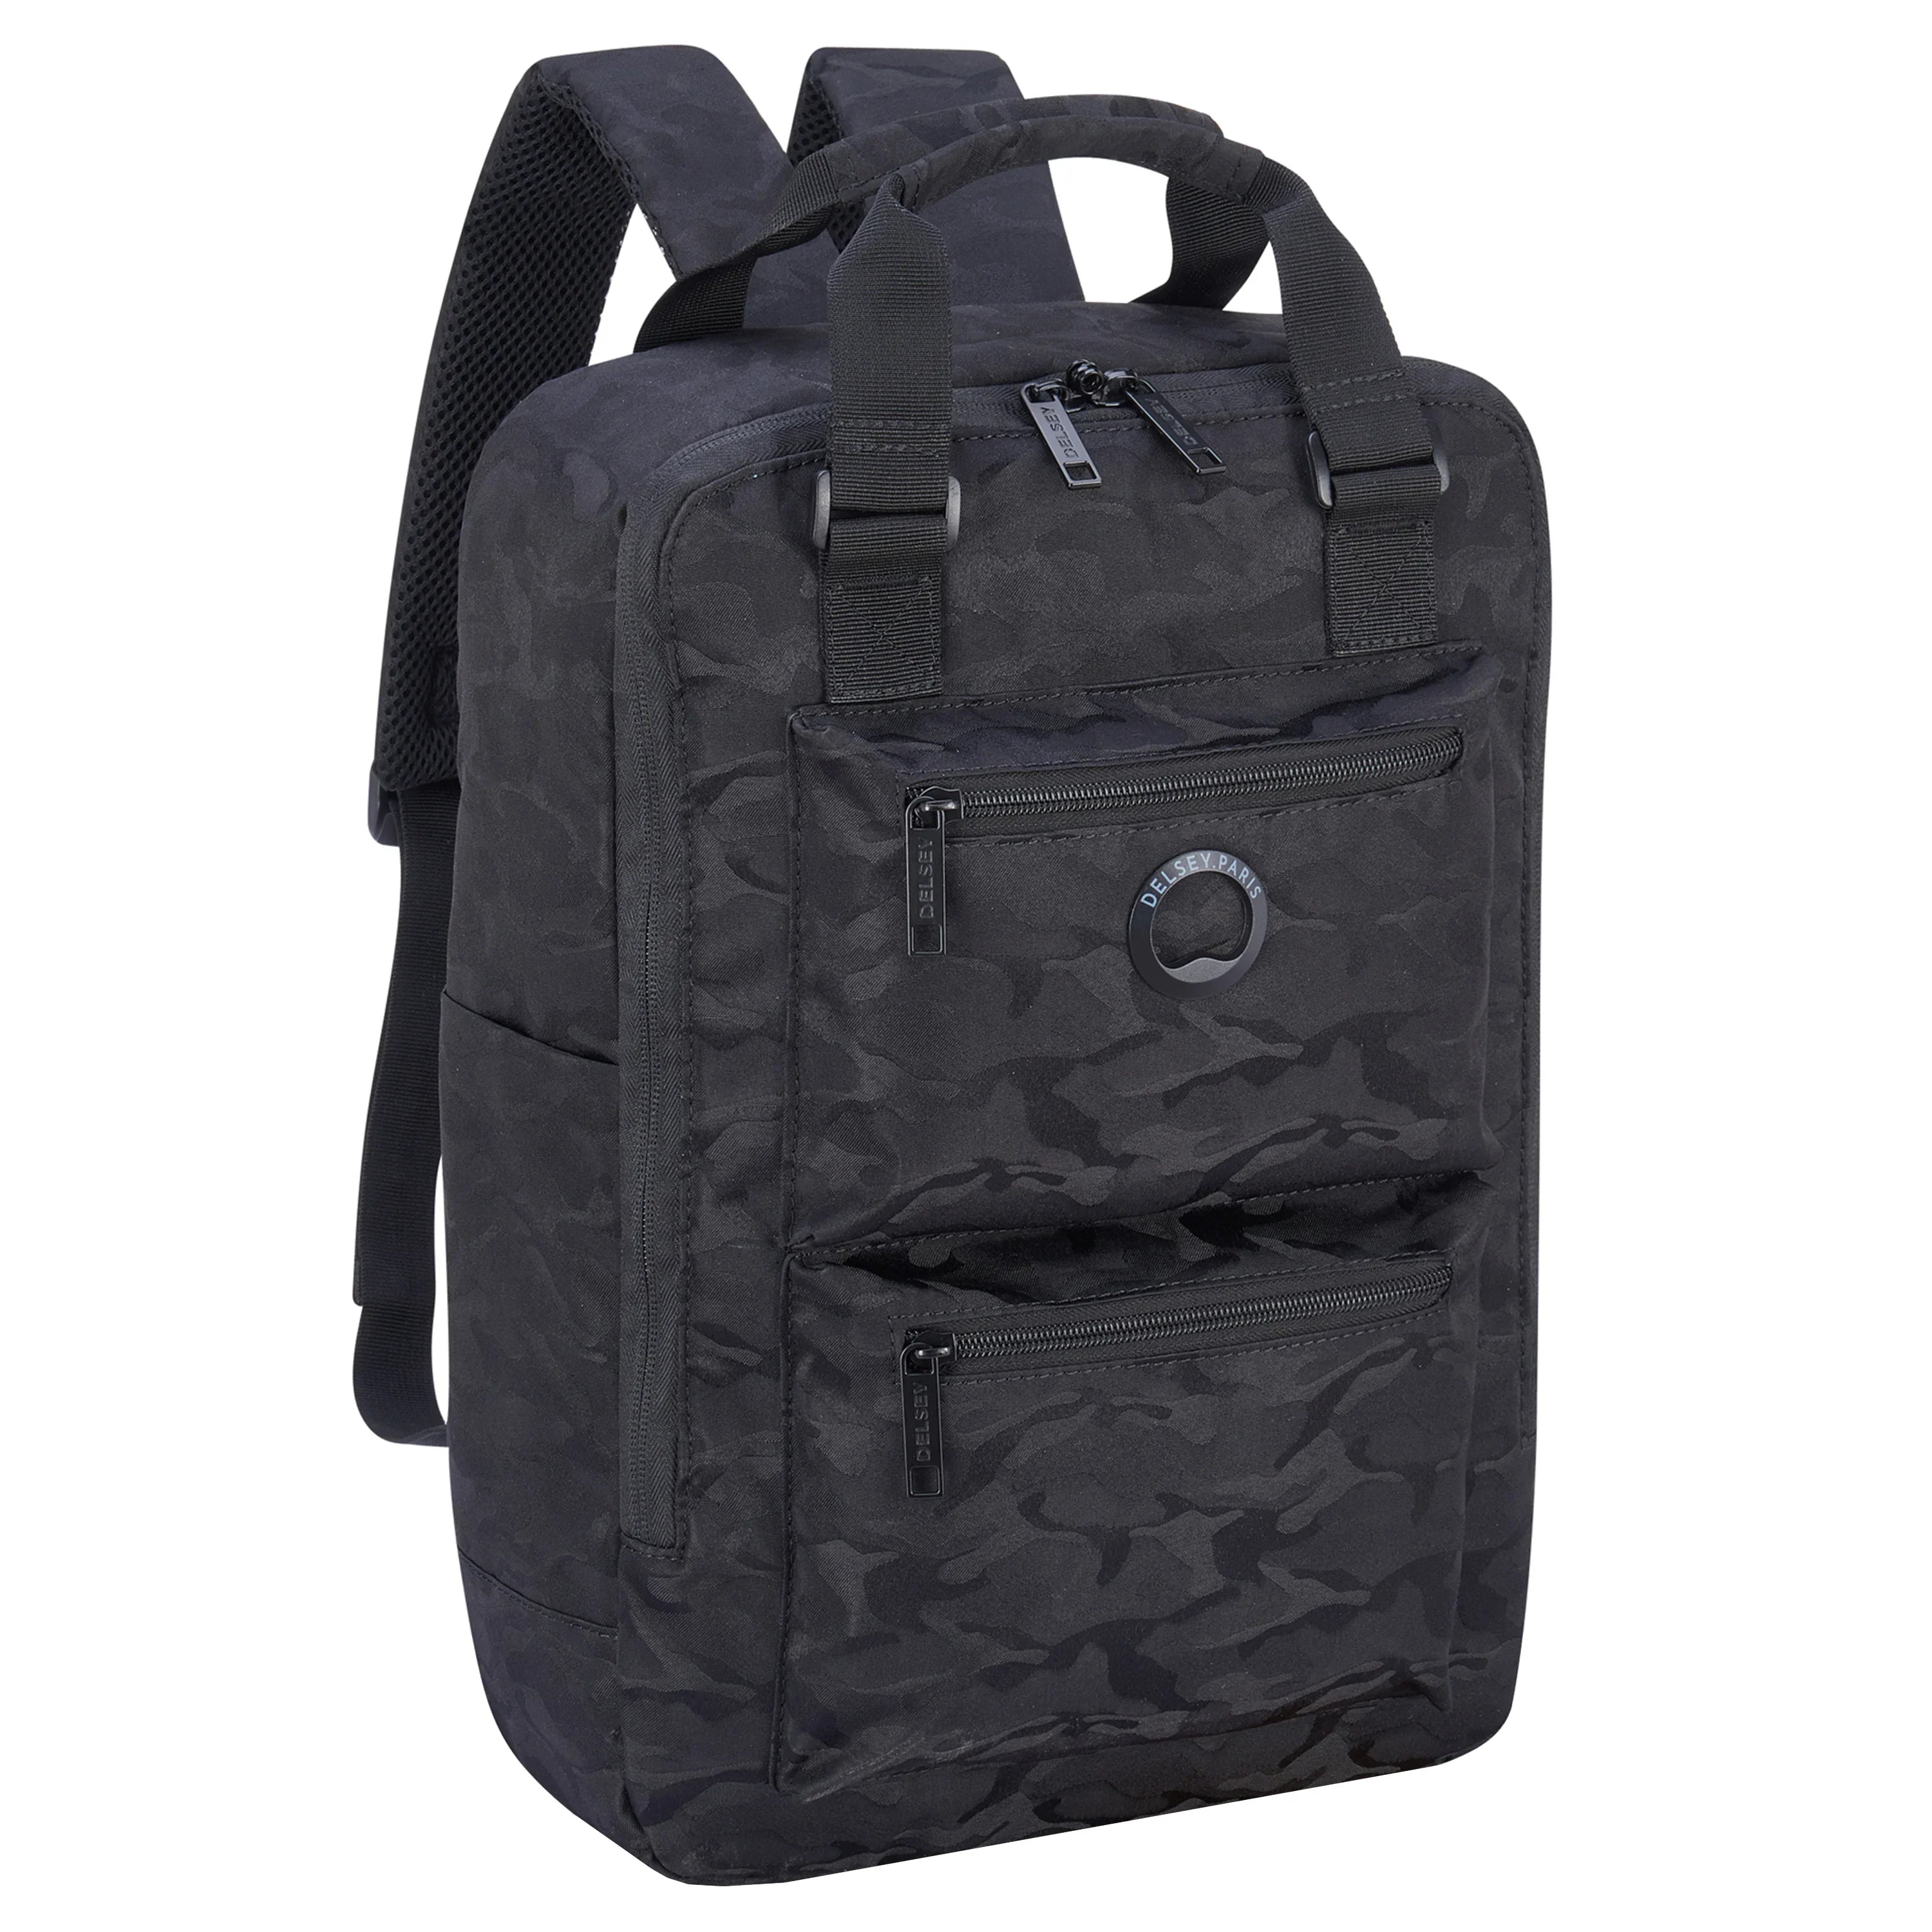 Delsey Citypak Backpack 41 cm - Black Camouflage